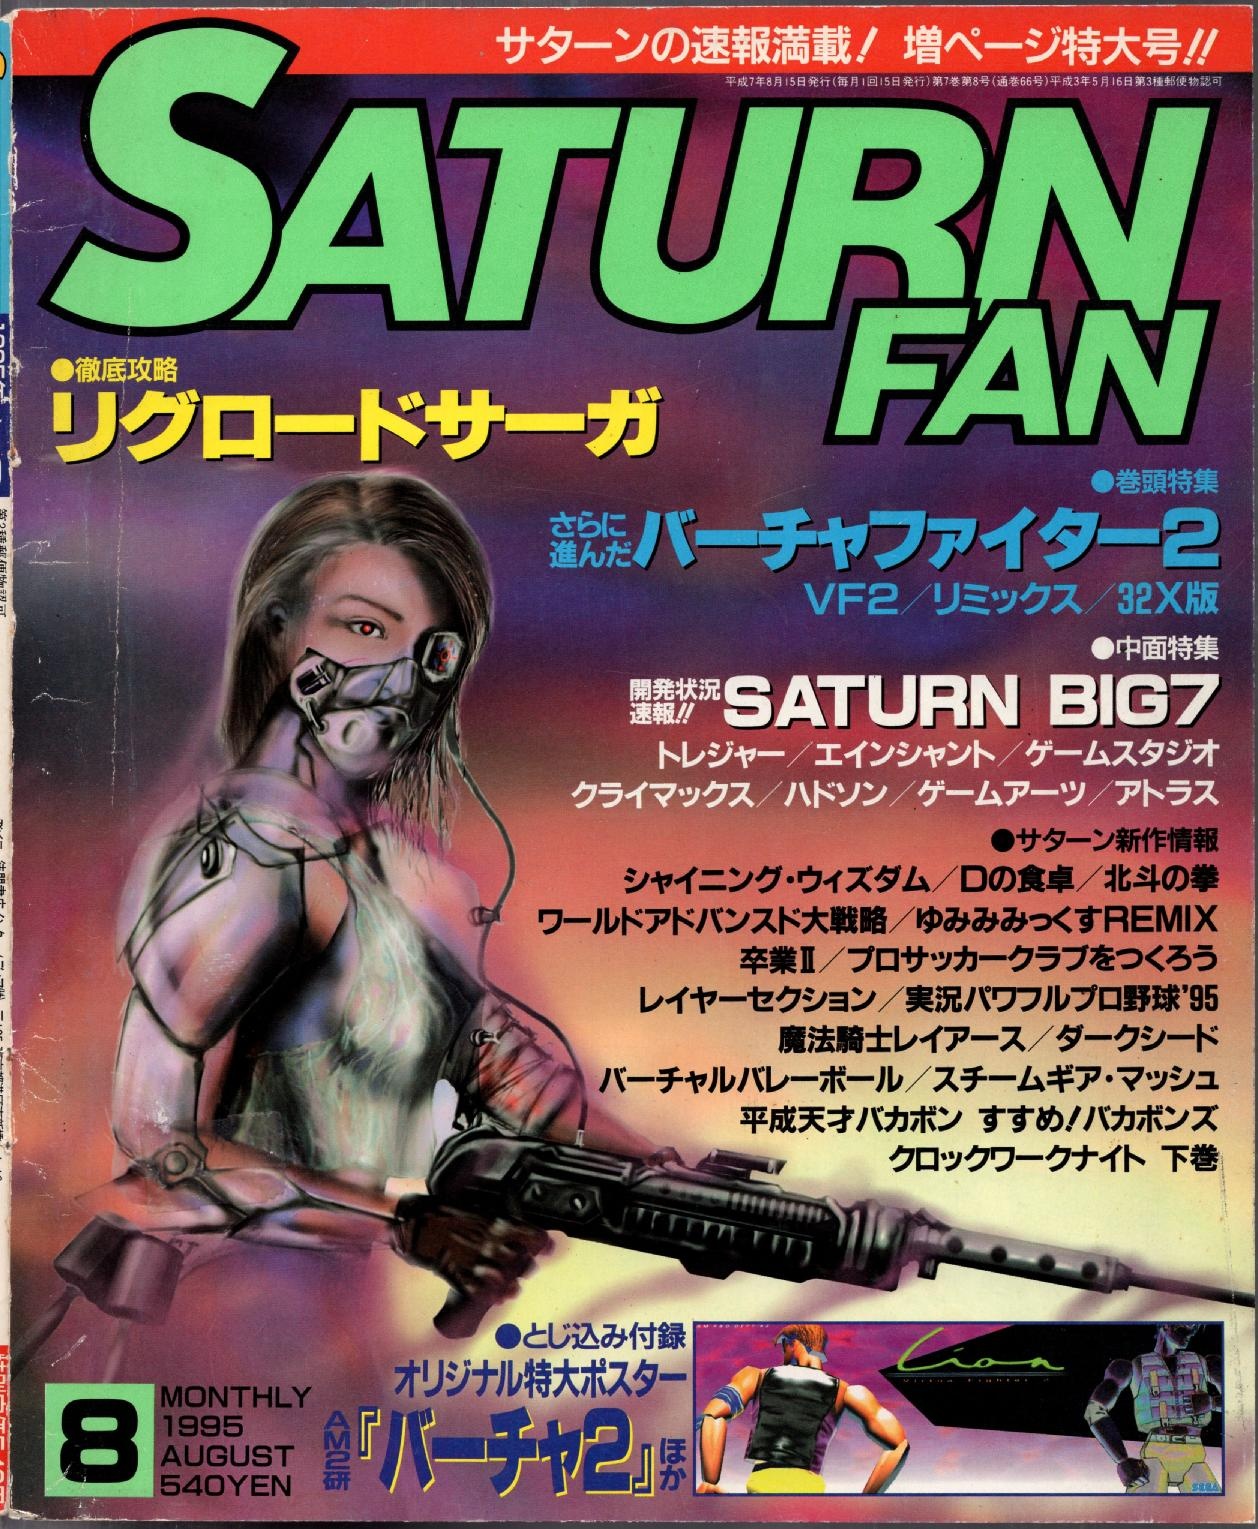 SaturnFan JP 1995-08 19950815.pdf